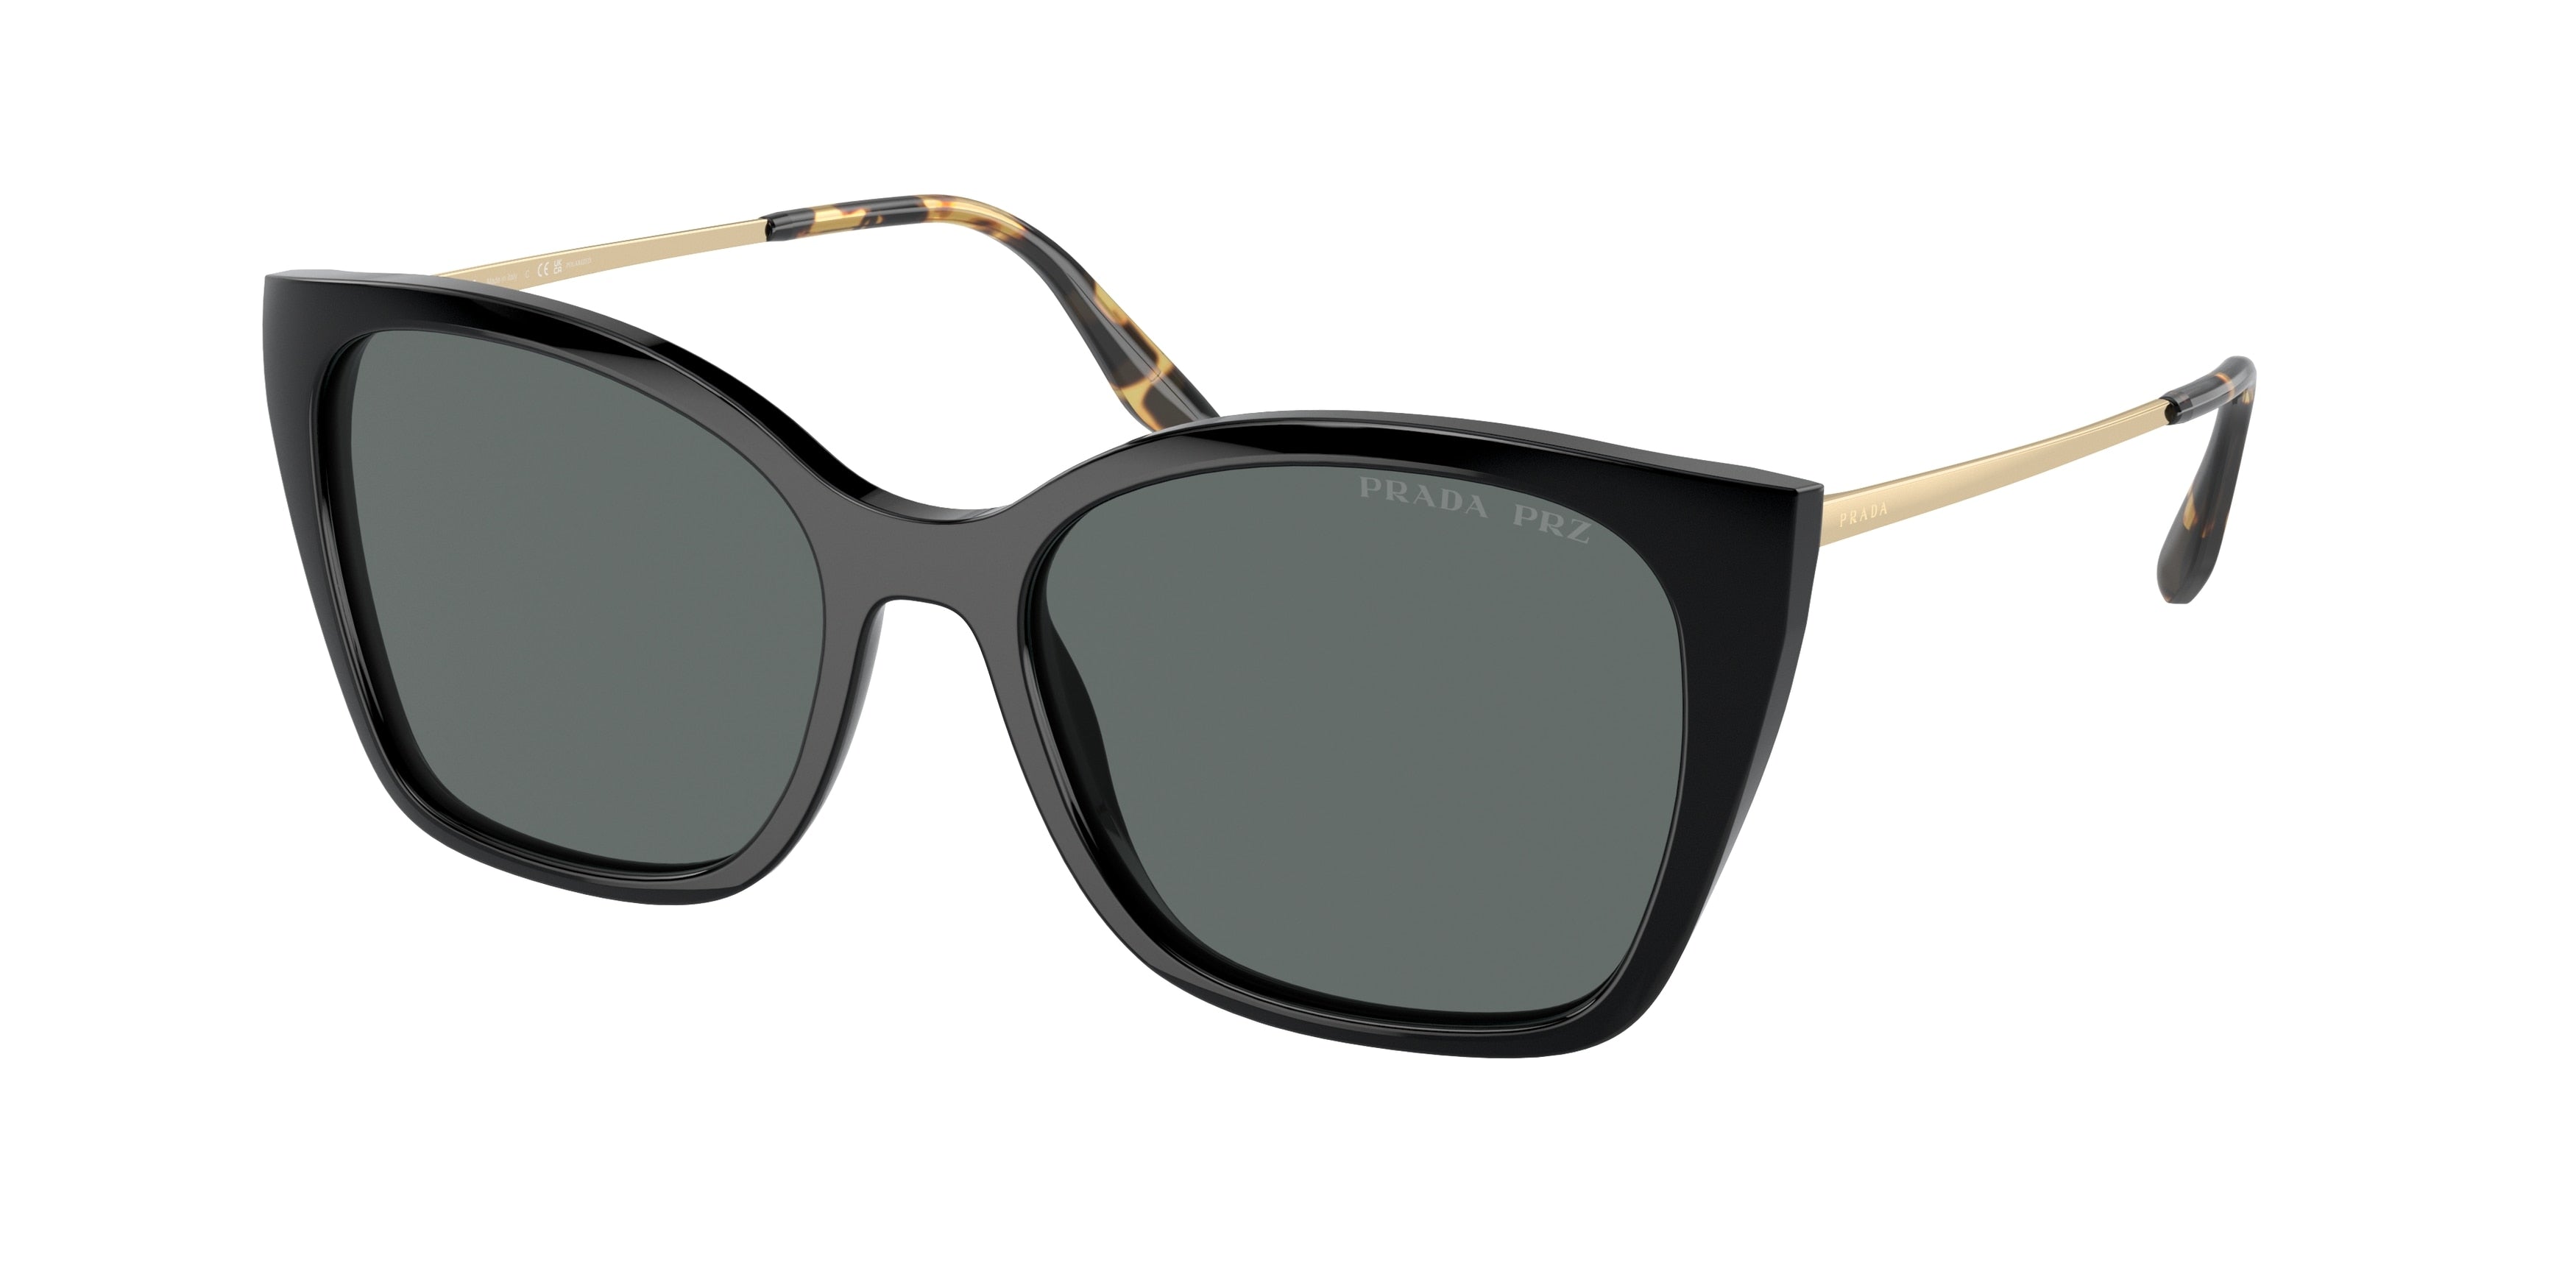 Prada PR12XS Cat Eye Sunglasses  1AB5Z1-Black 54-145-17 - Color Map Black